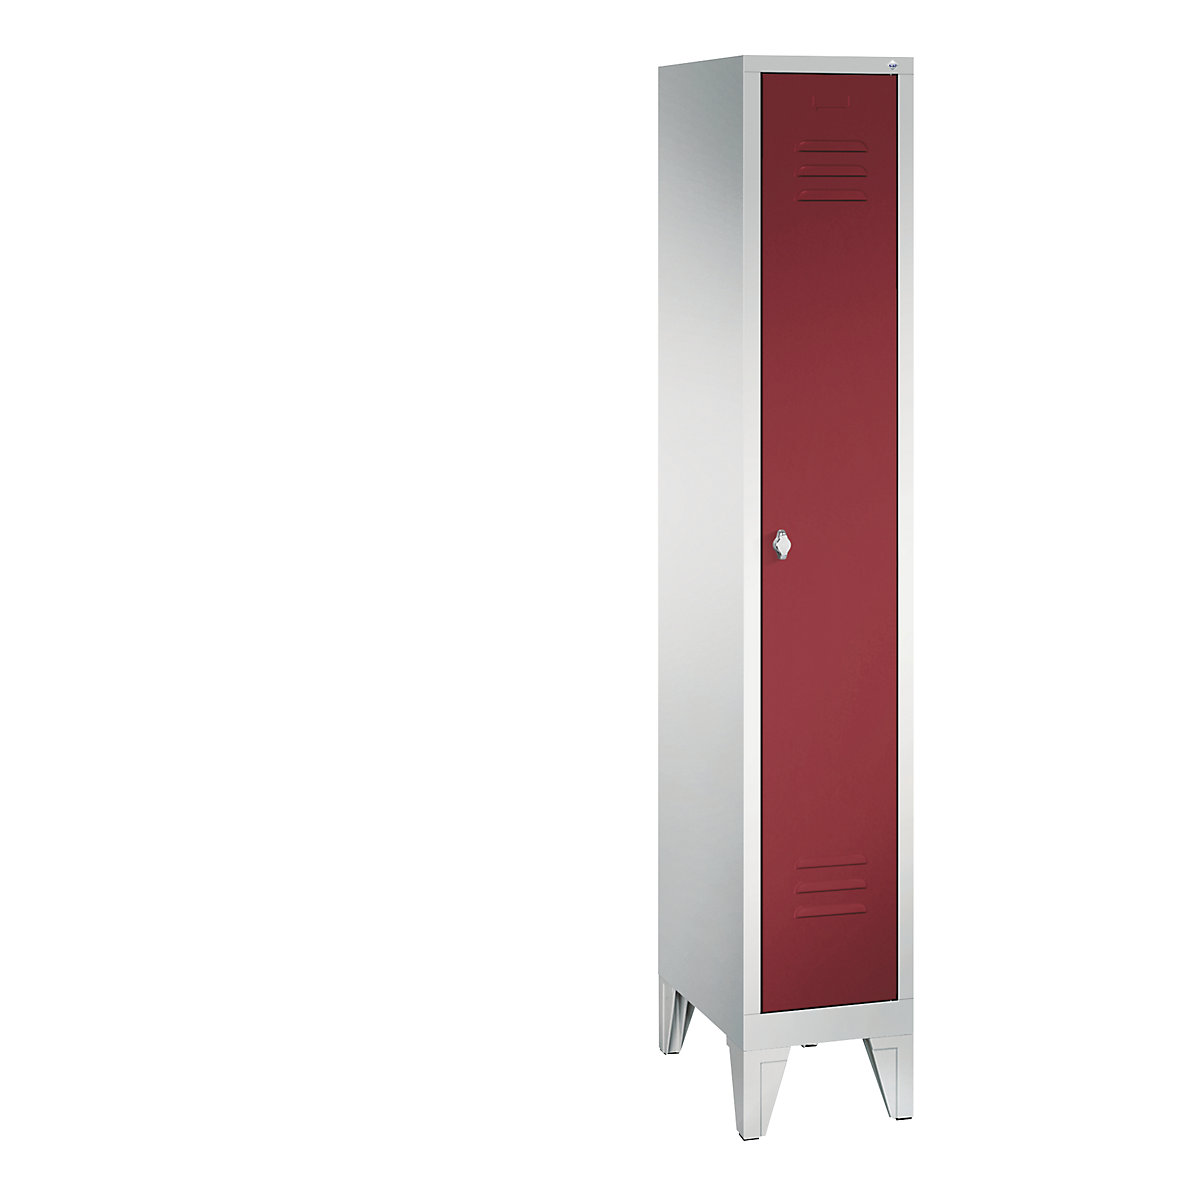 CLASSIC garderobna omara z nogami – C+P, 1 predelek, širina 300 mm/predelek, svetlo sive / rubinasto rdeče barve-7